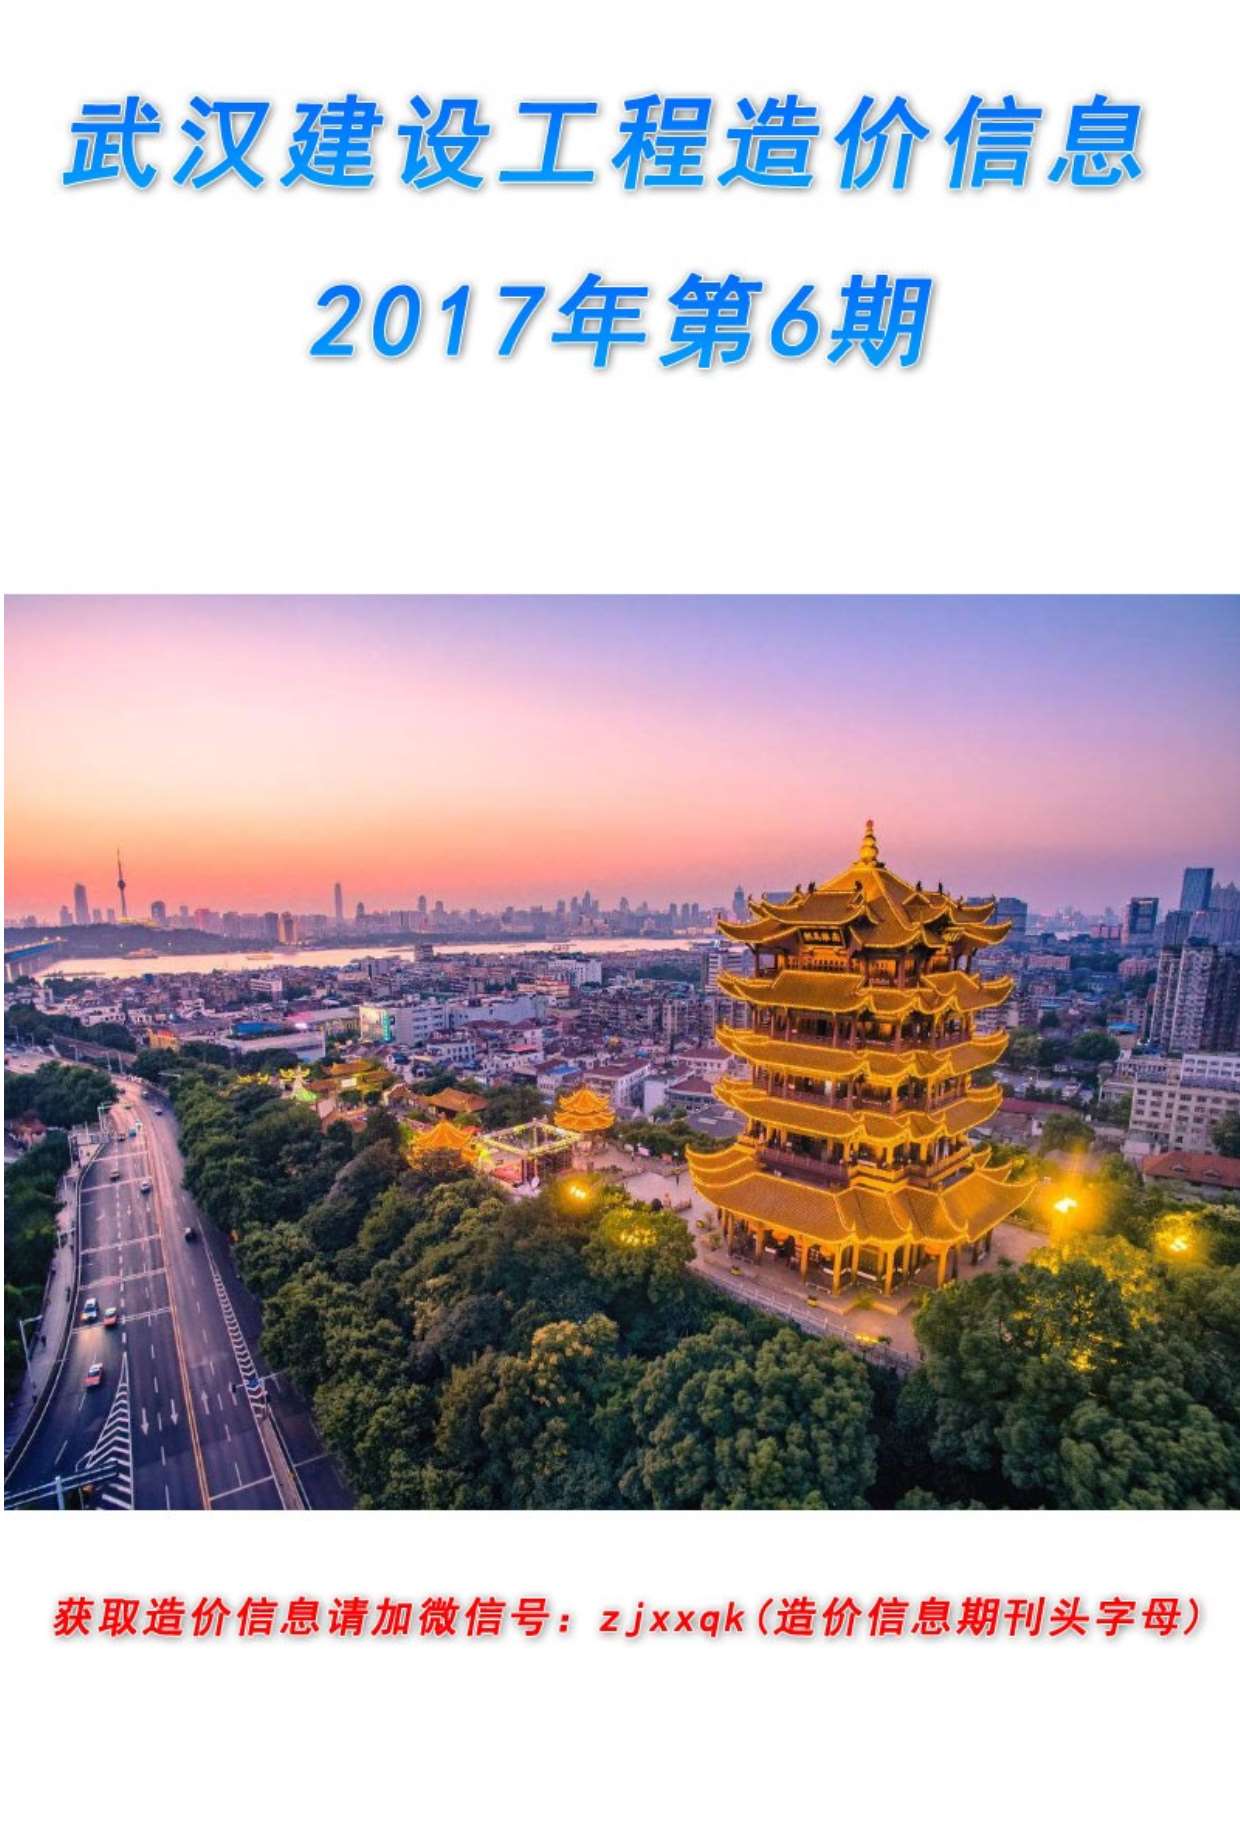 武汉市2017年6月材料价